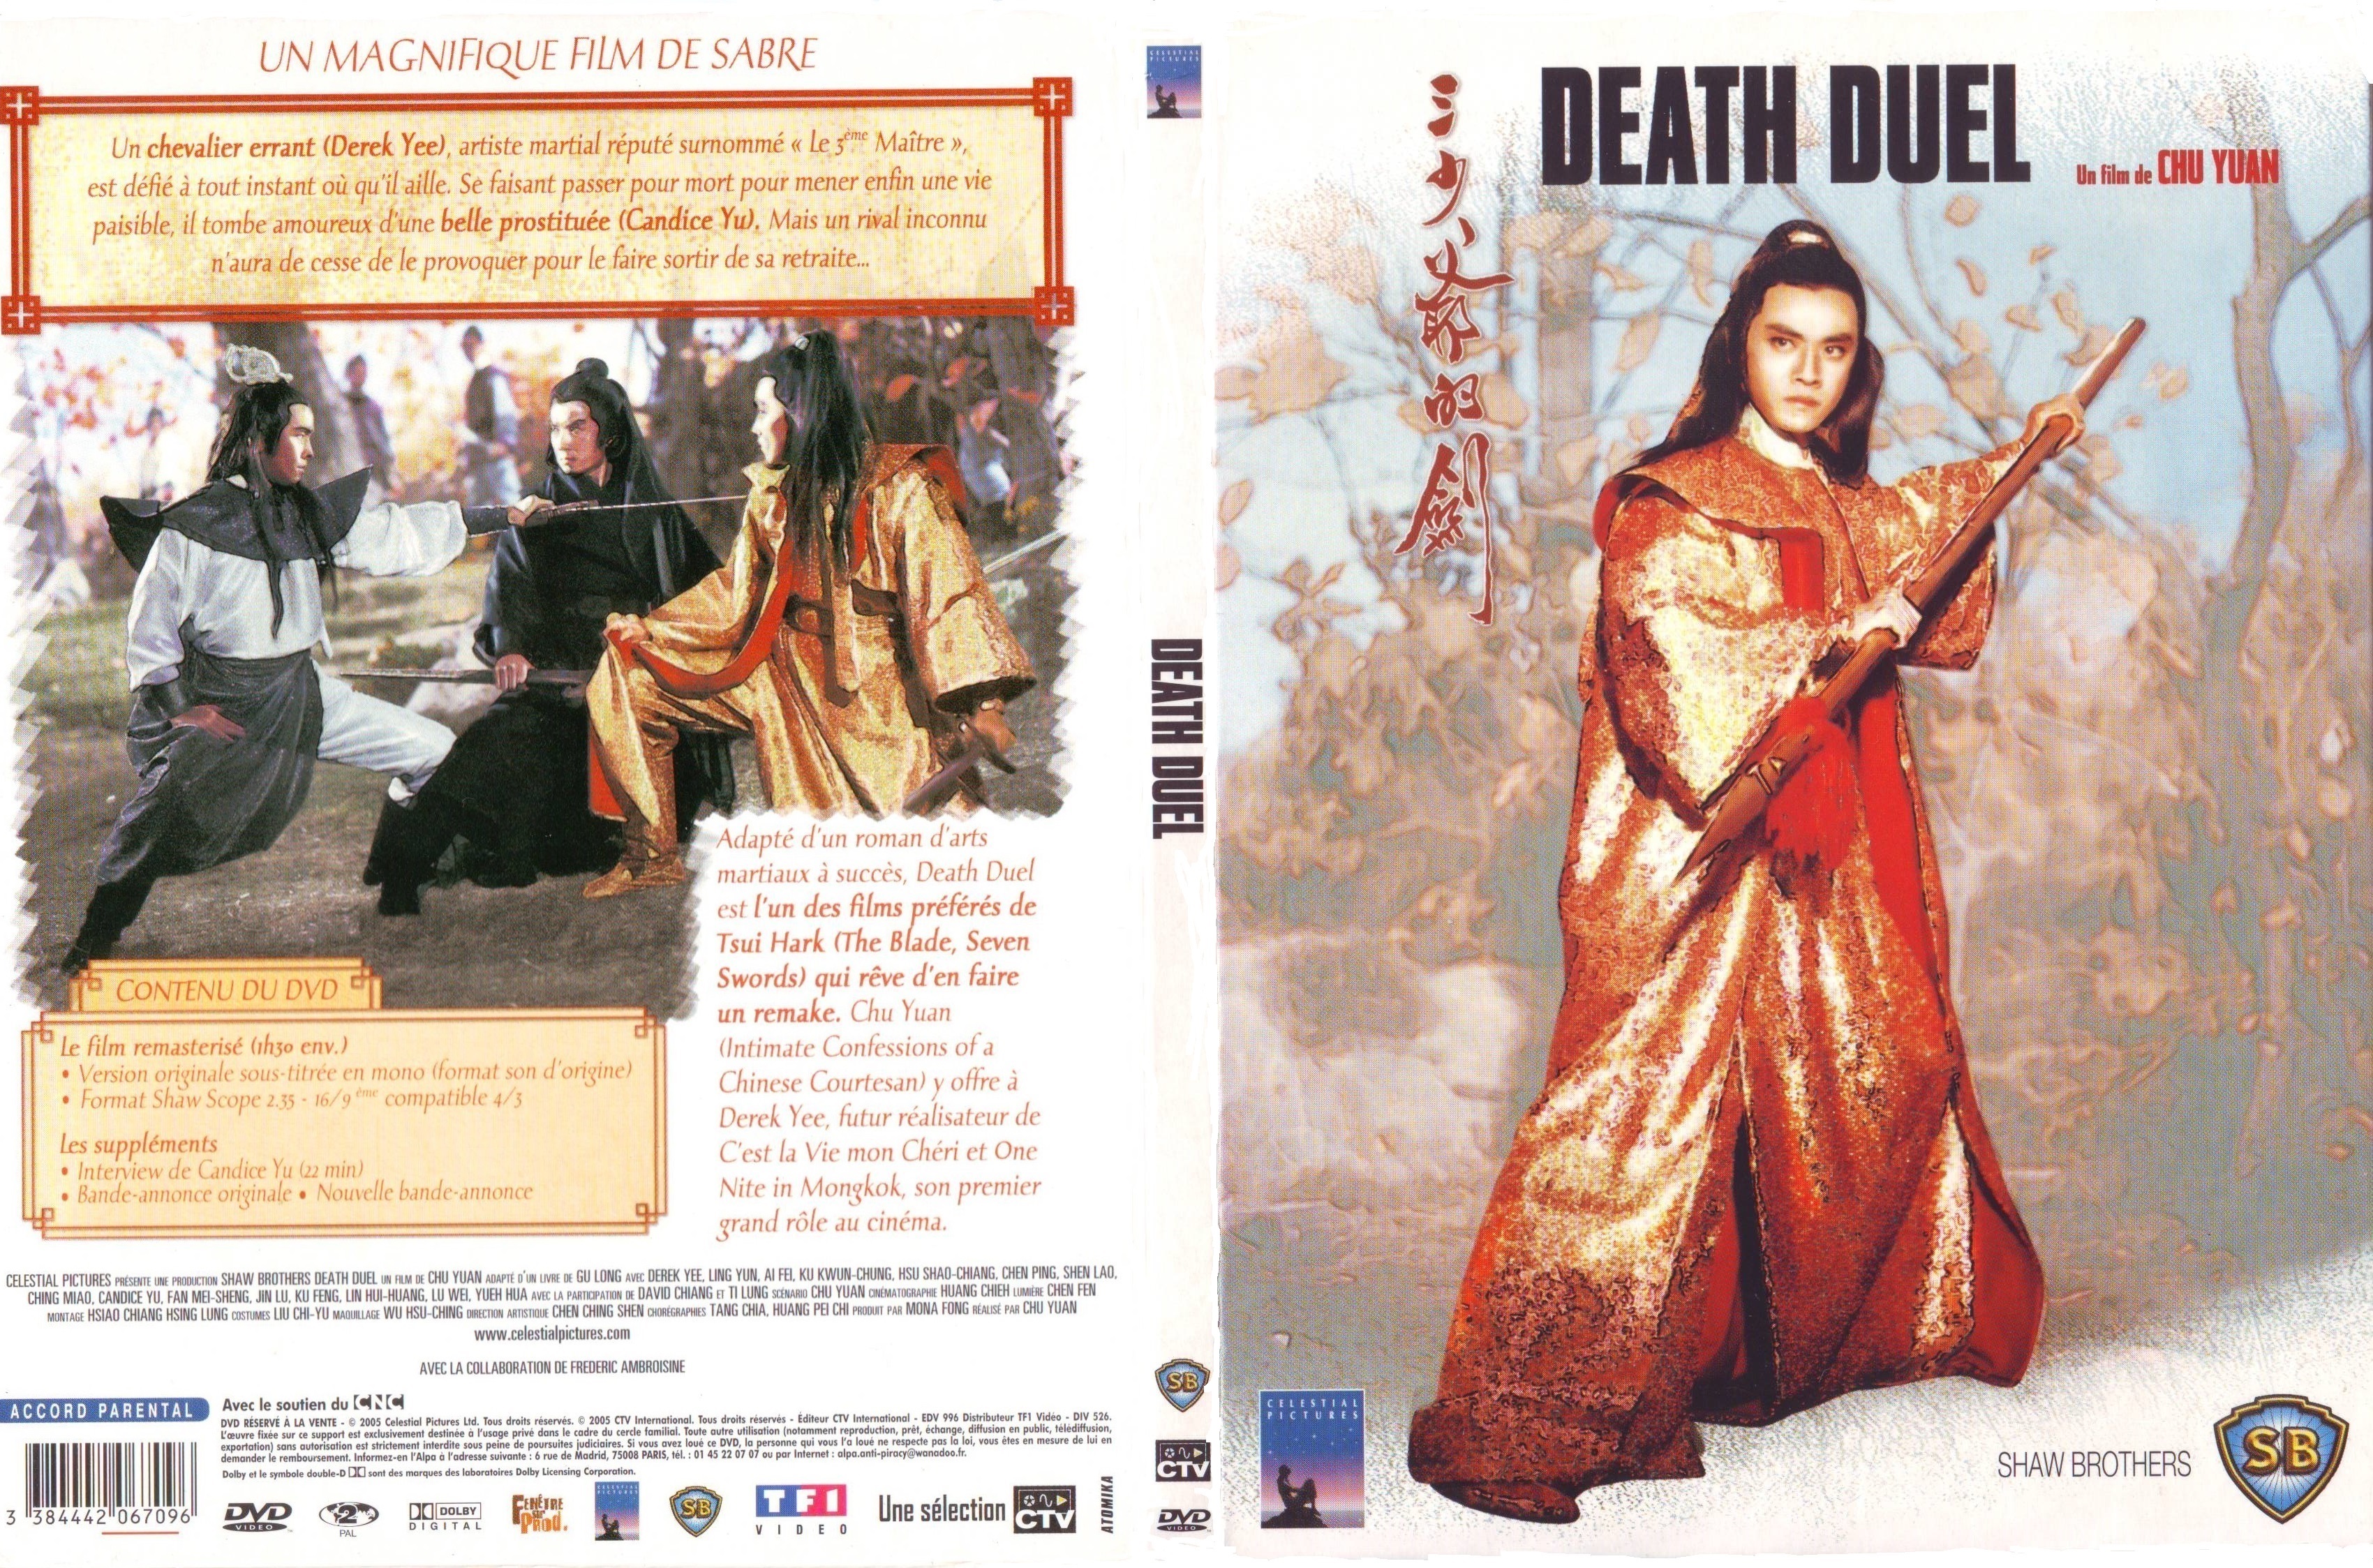 Jaquette DVD Death duel